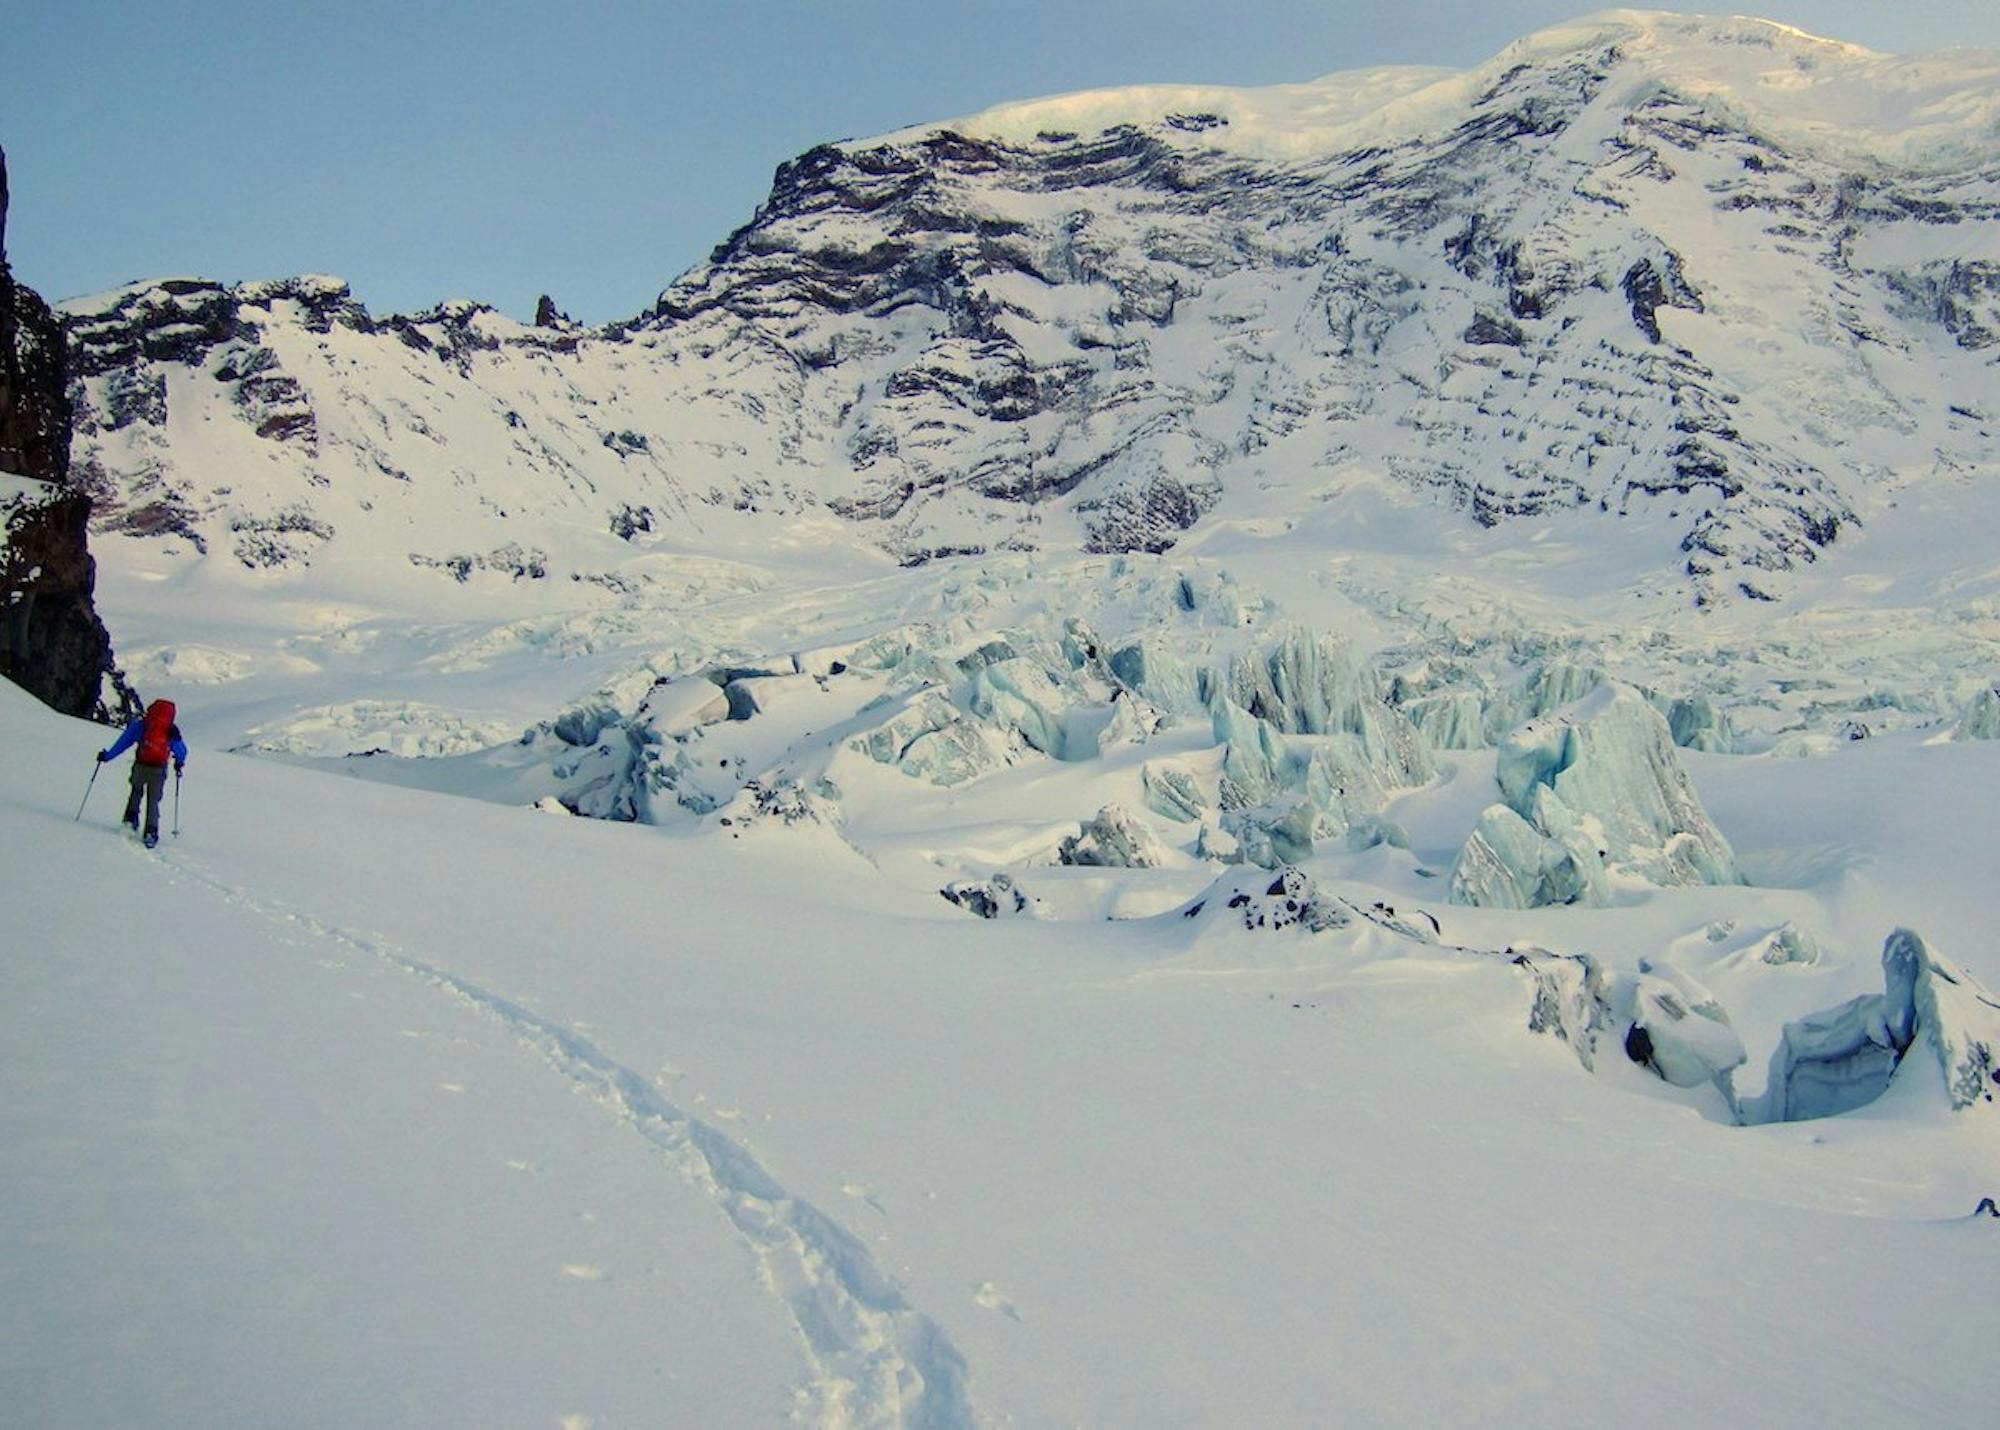 Traversing across the Carbon Glacier